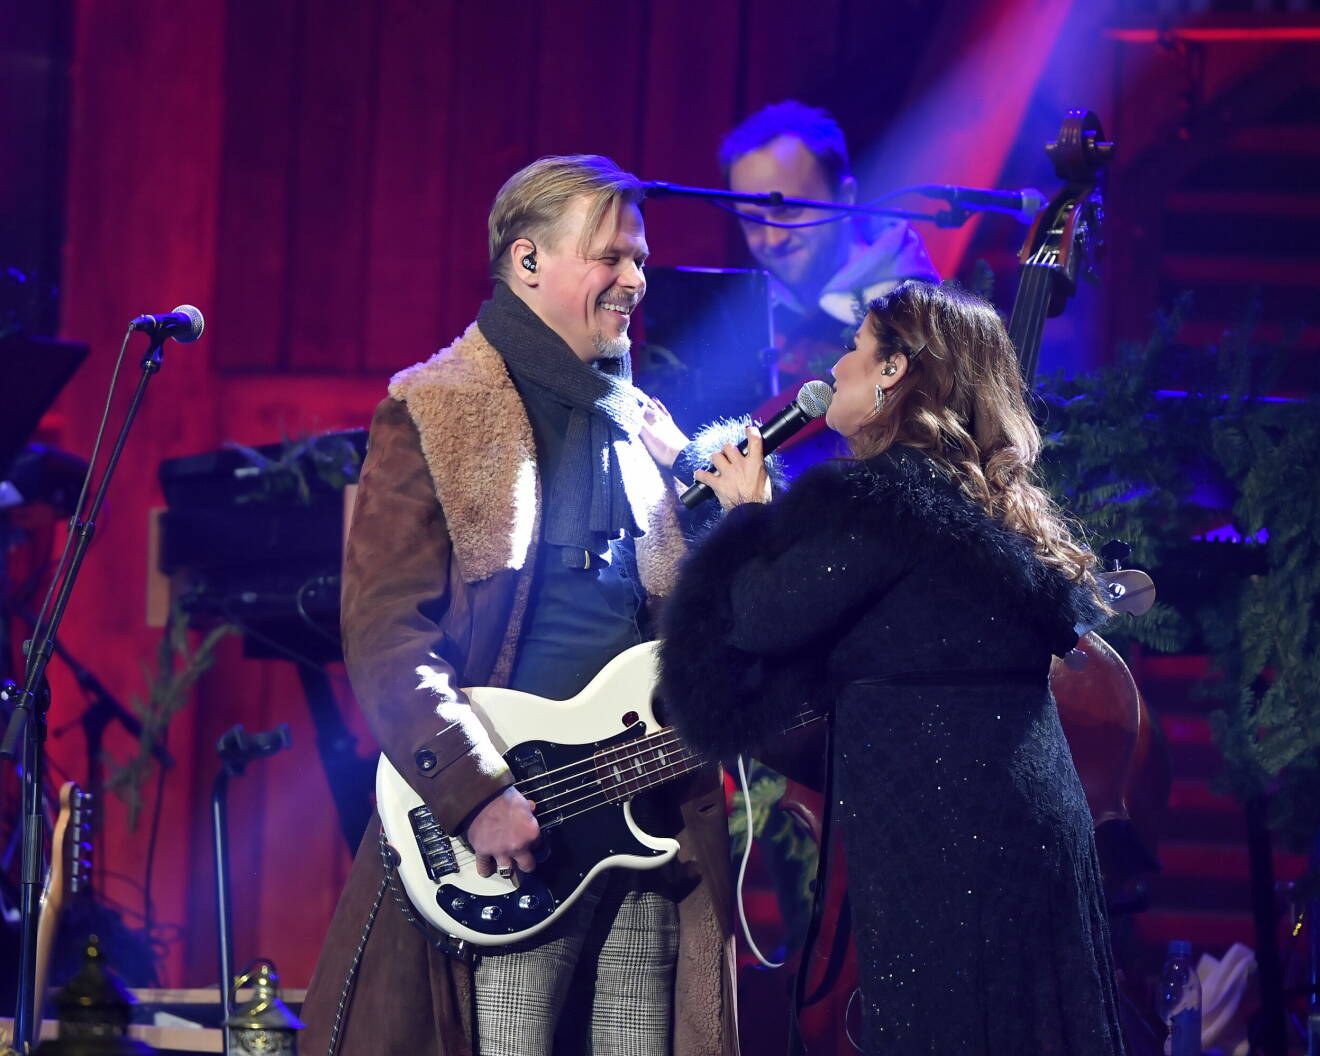 År 2019 stod Jimmy och Carola tillsammans på scenen för den årliga julkonserten Jul med Carola, i Steninge slottslada.